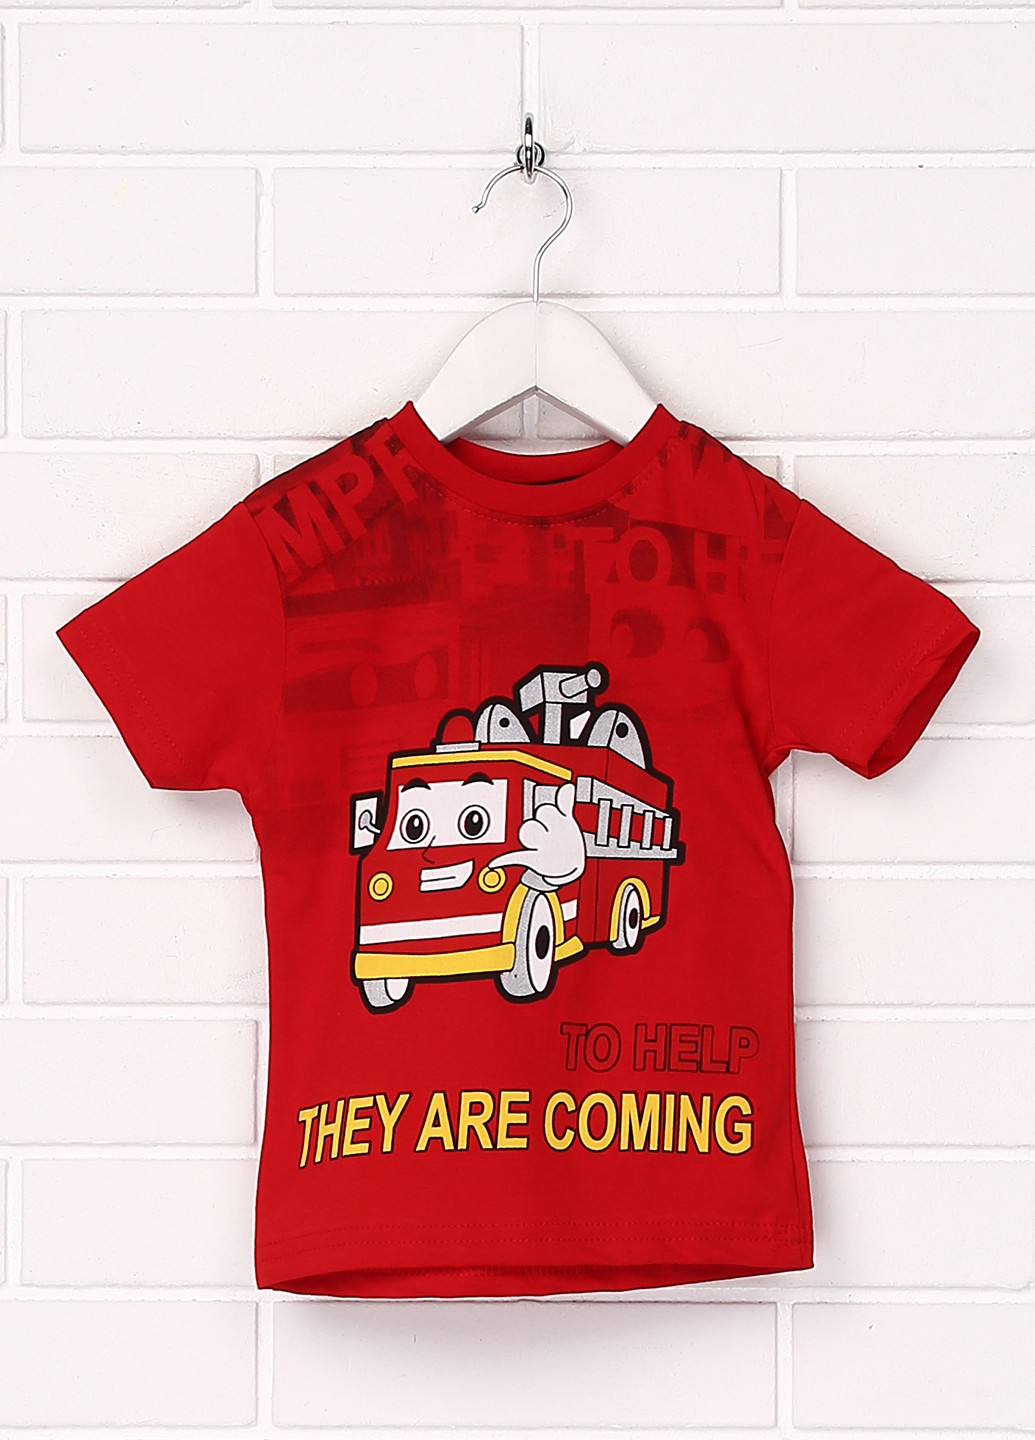 Червона літня футболка з коротким рукавом Hacali Kids